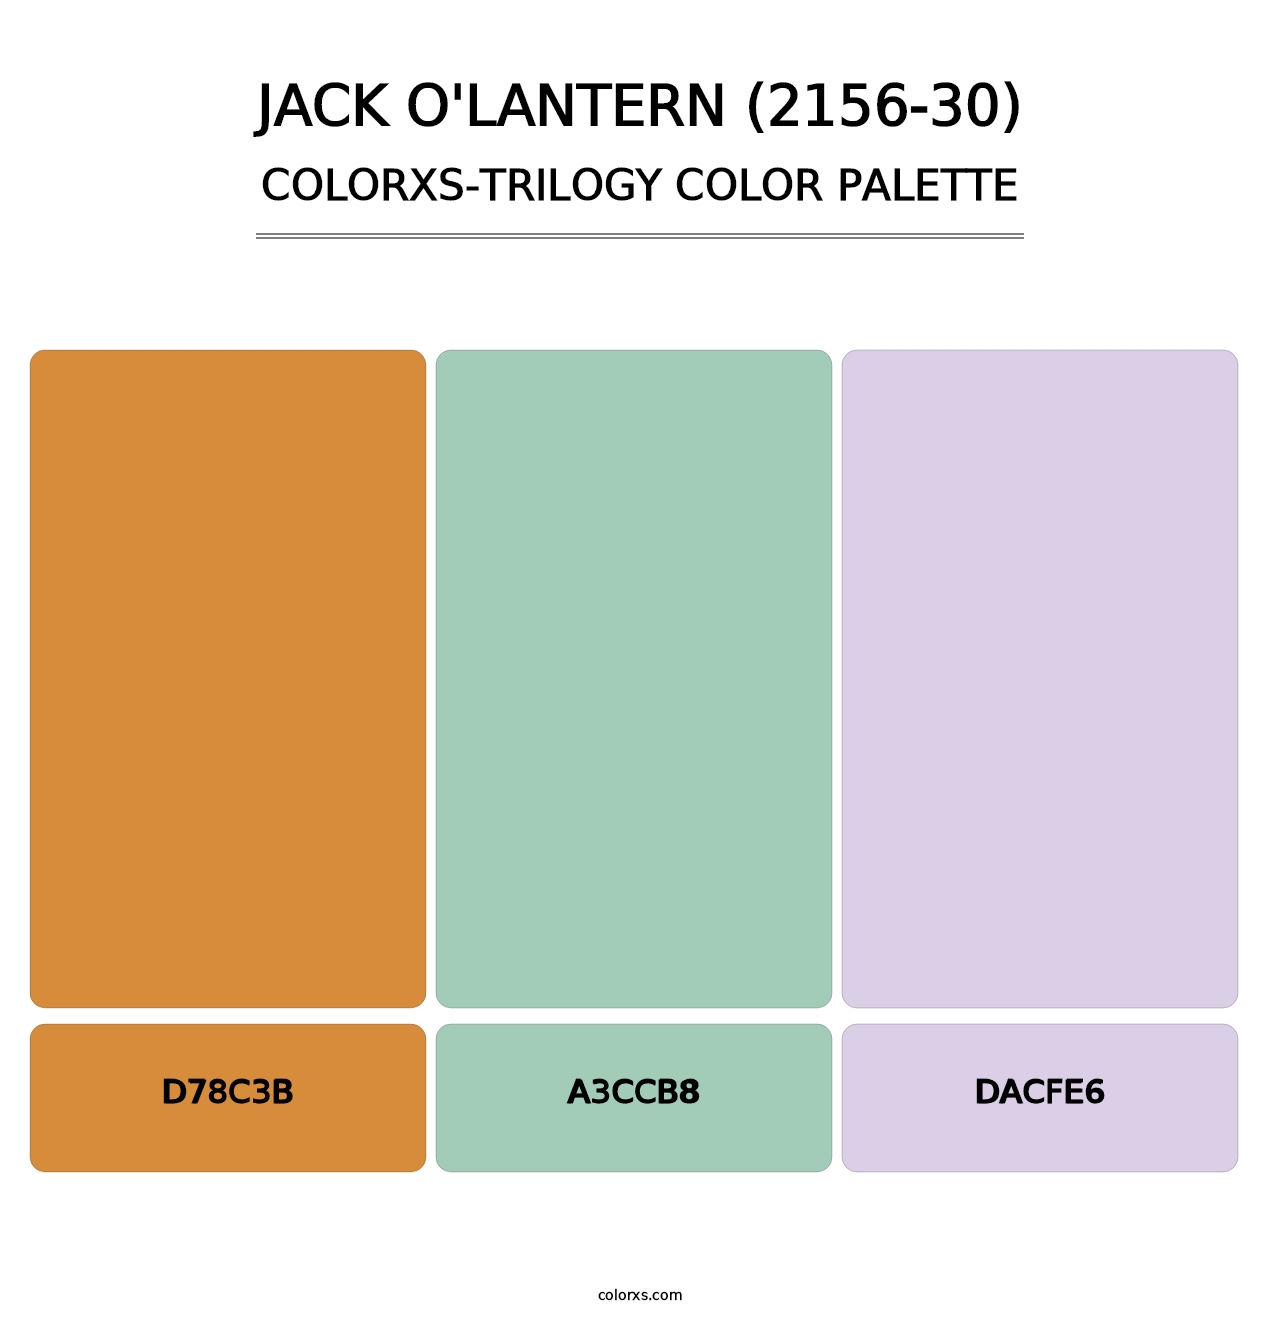 Jack O'Lantern (2156-30) - Colorxs Trilogy Palette